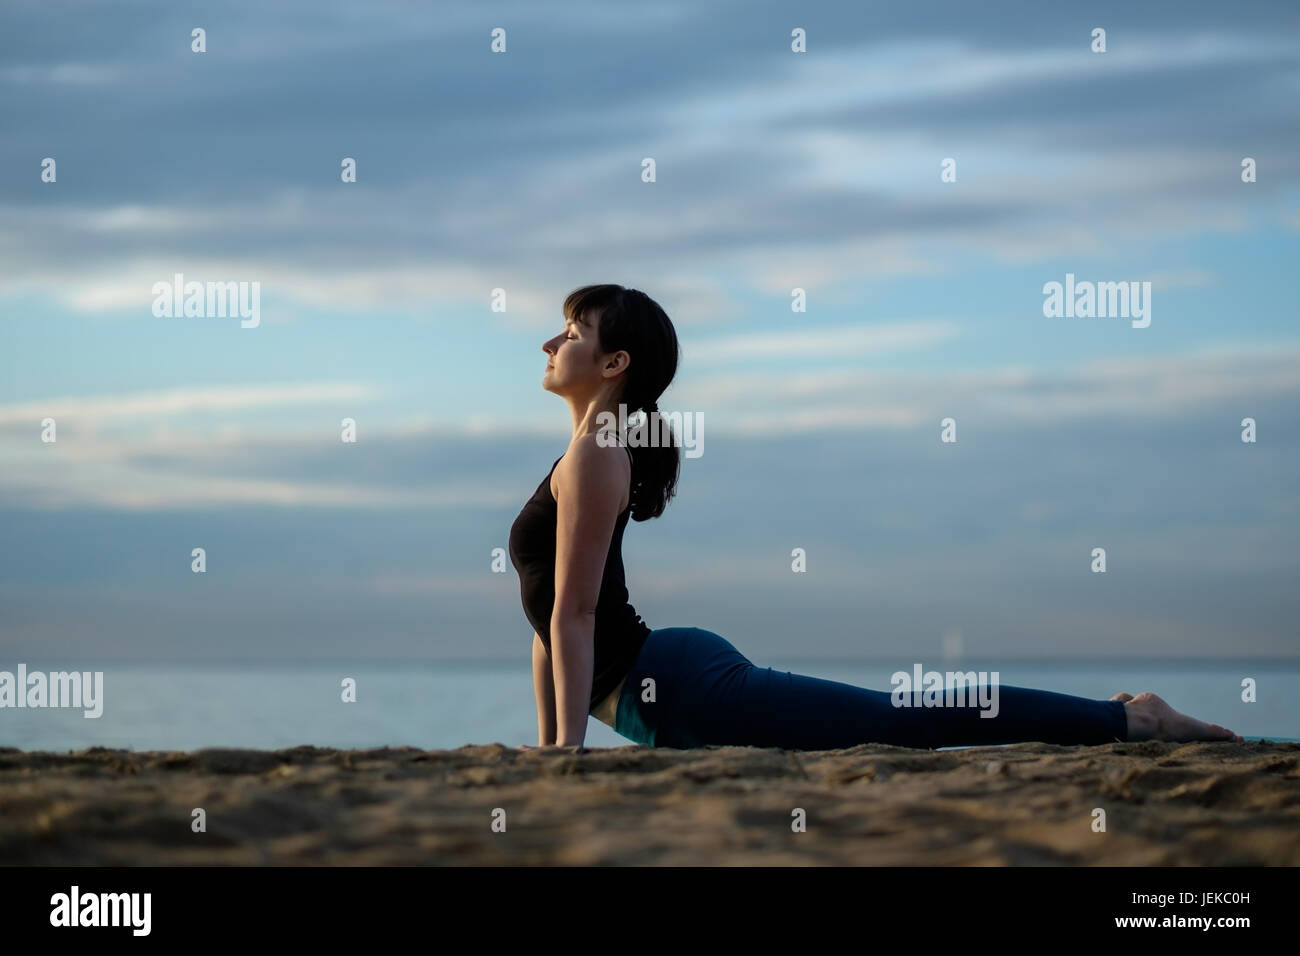 Asana yoga en plein air sur la plage. face à chien posent Banque D'Images